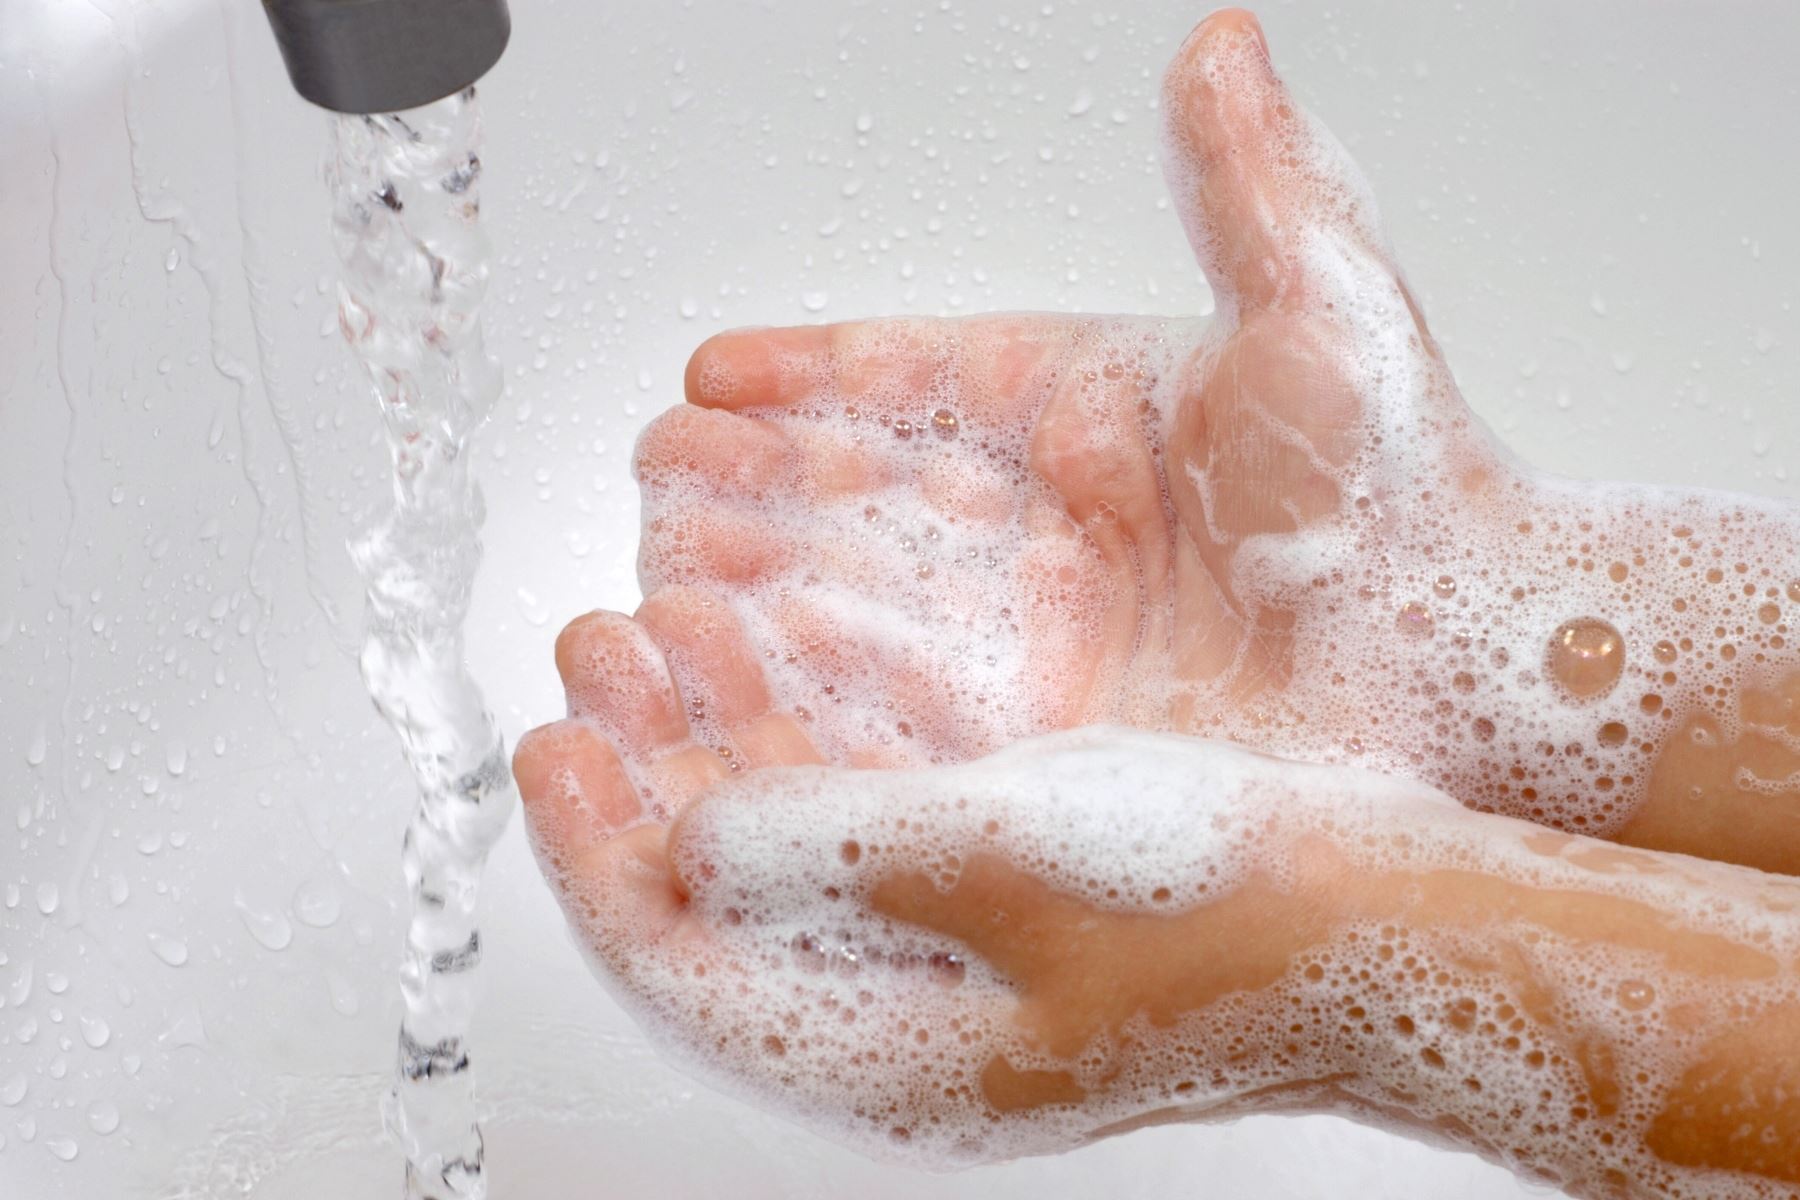 El lavado de manos es importante para prevenir enfermedad, afirma el Ministerio de Salud. ANDINA/Difusión.